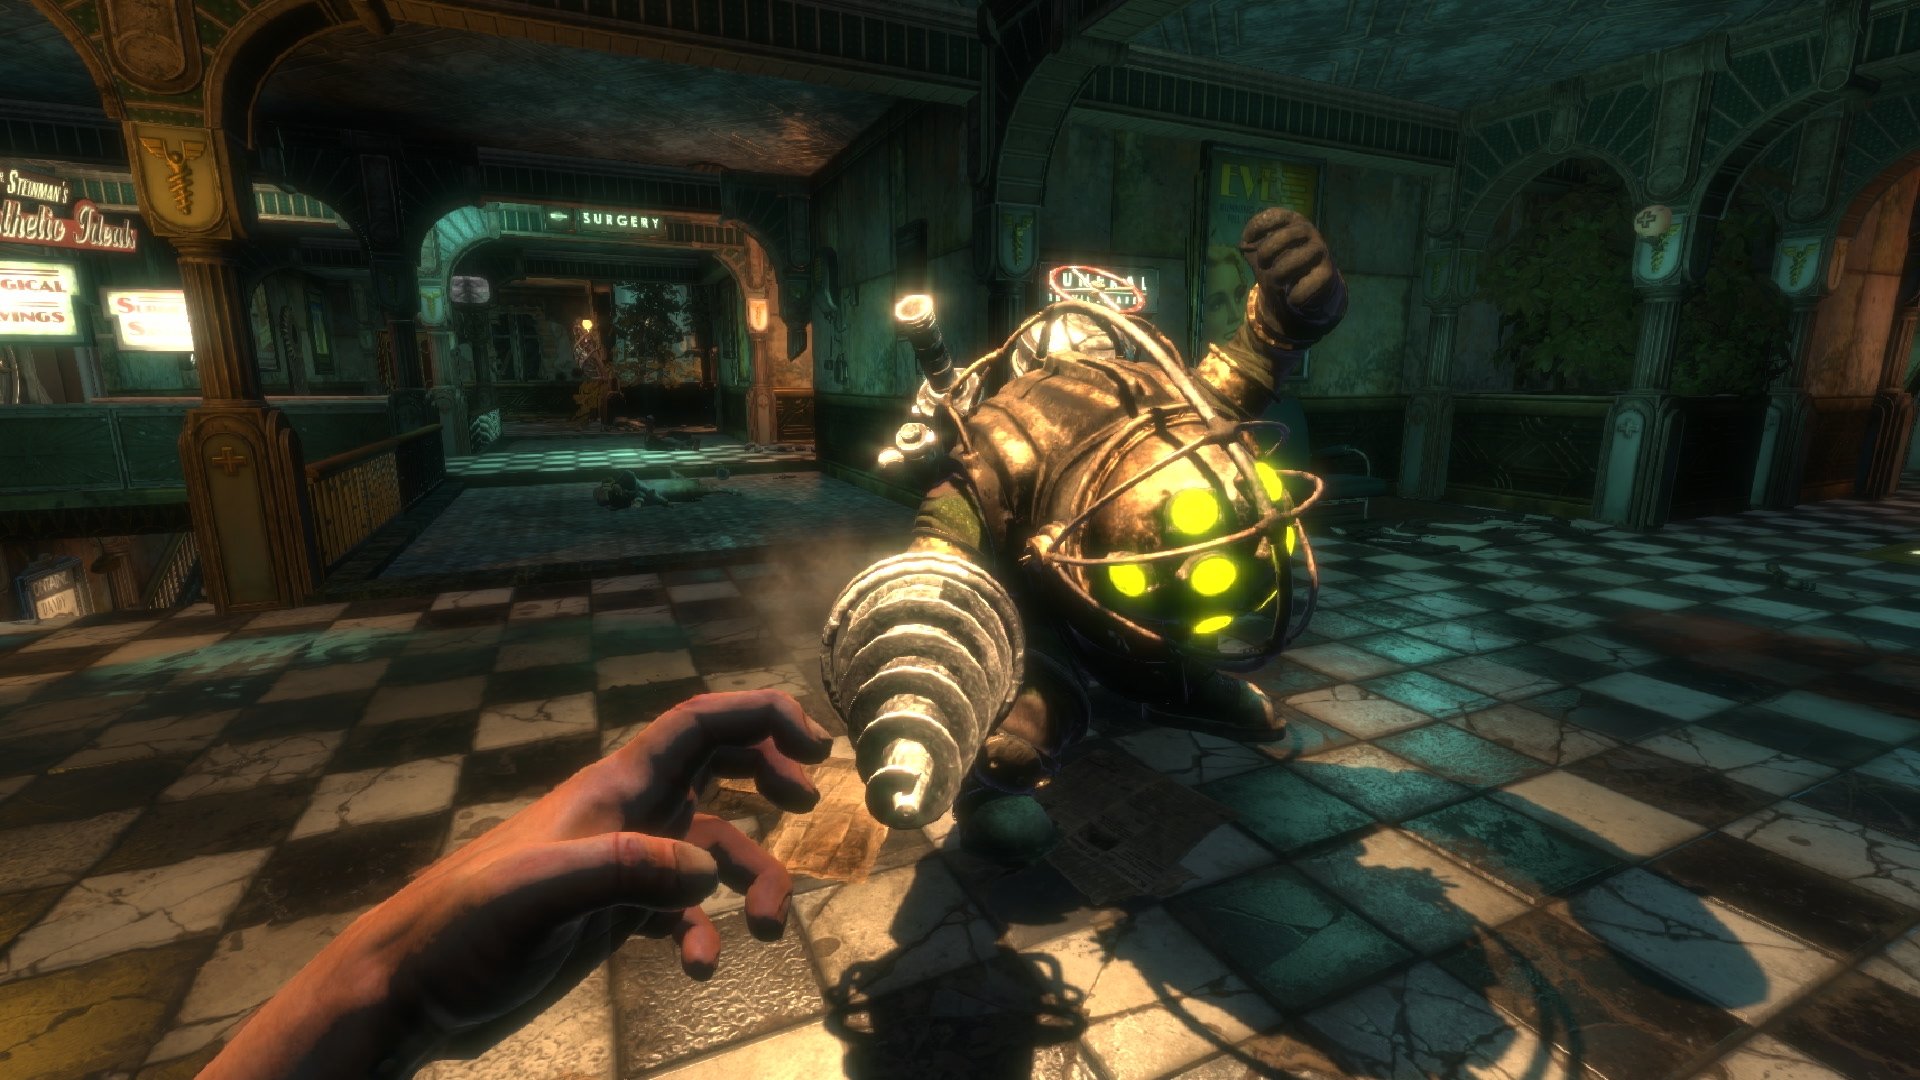 ข่าวลือ BioShock 4 มีปัญหาในระหว่างการพัฒนา และอาจถูกเลื่อนวางจำหน่าย